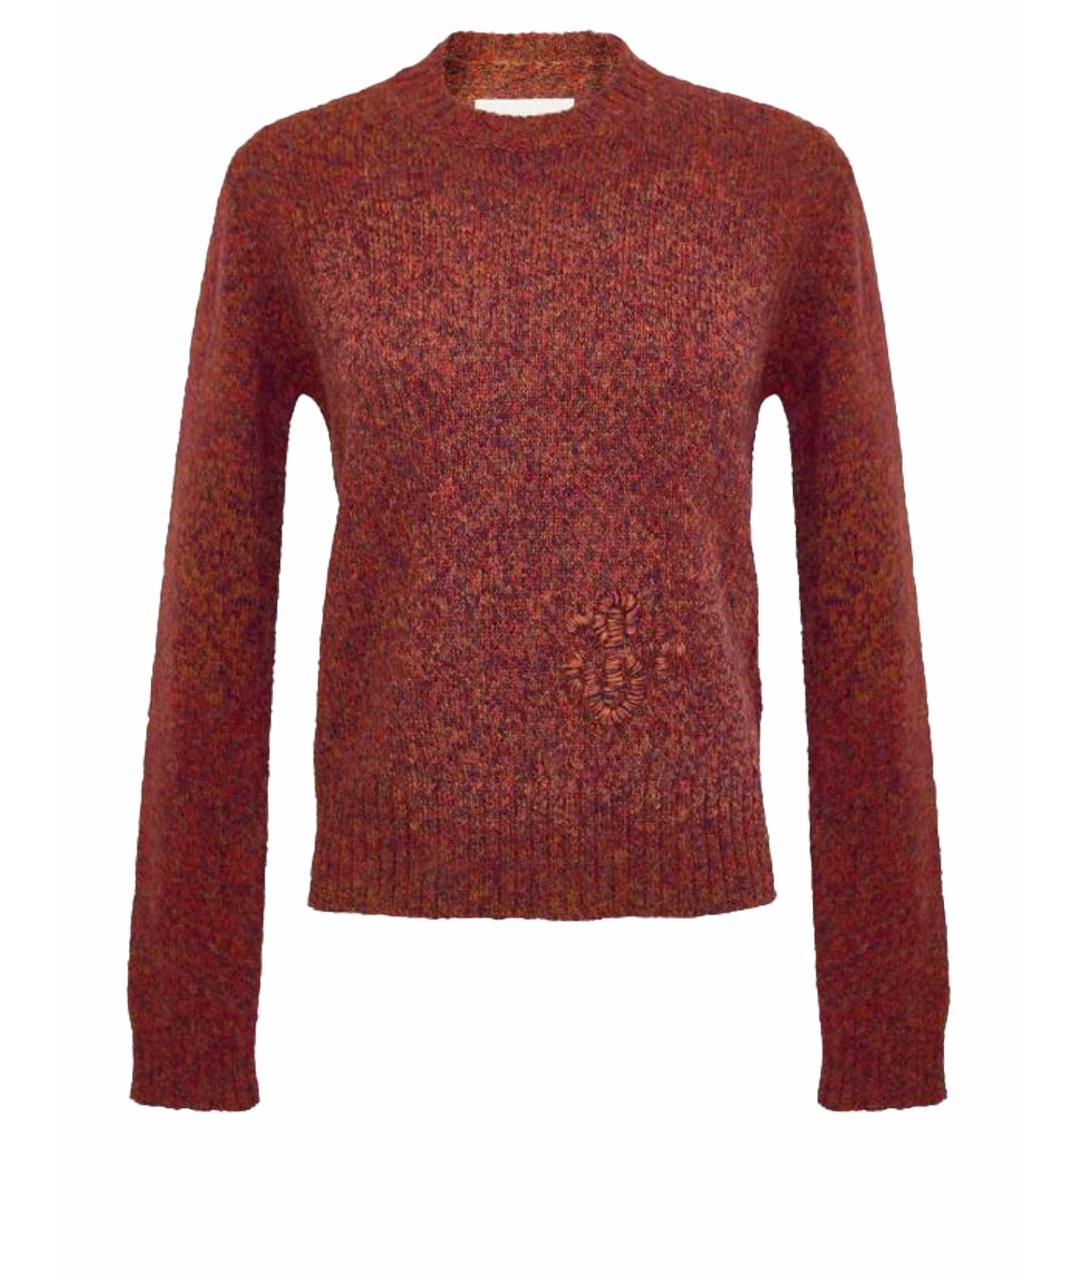 JIL SANDER Бордовый шелковый джемпер / свитер, фото 1